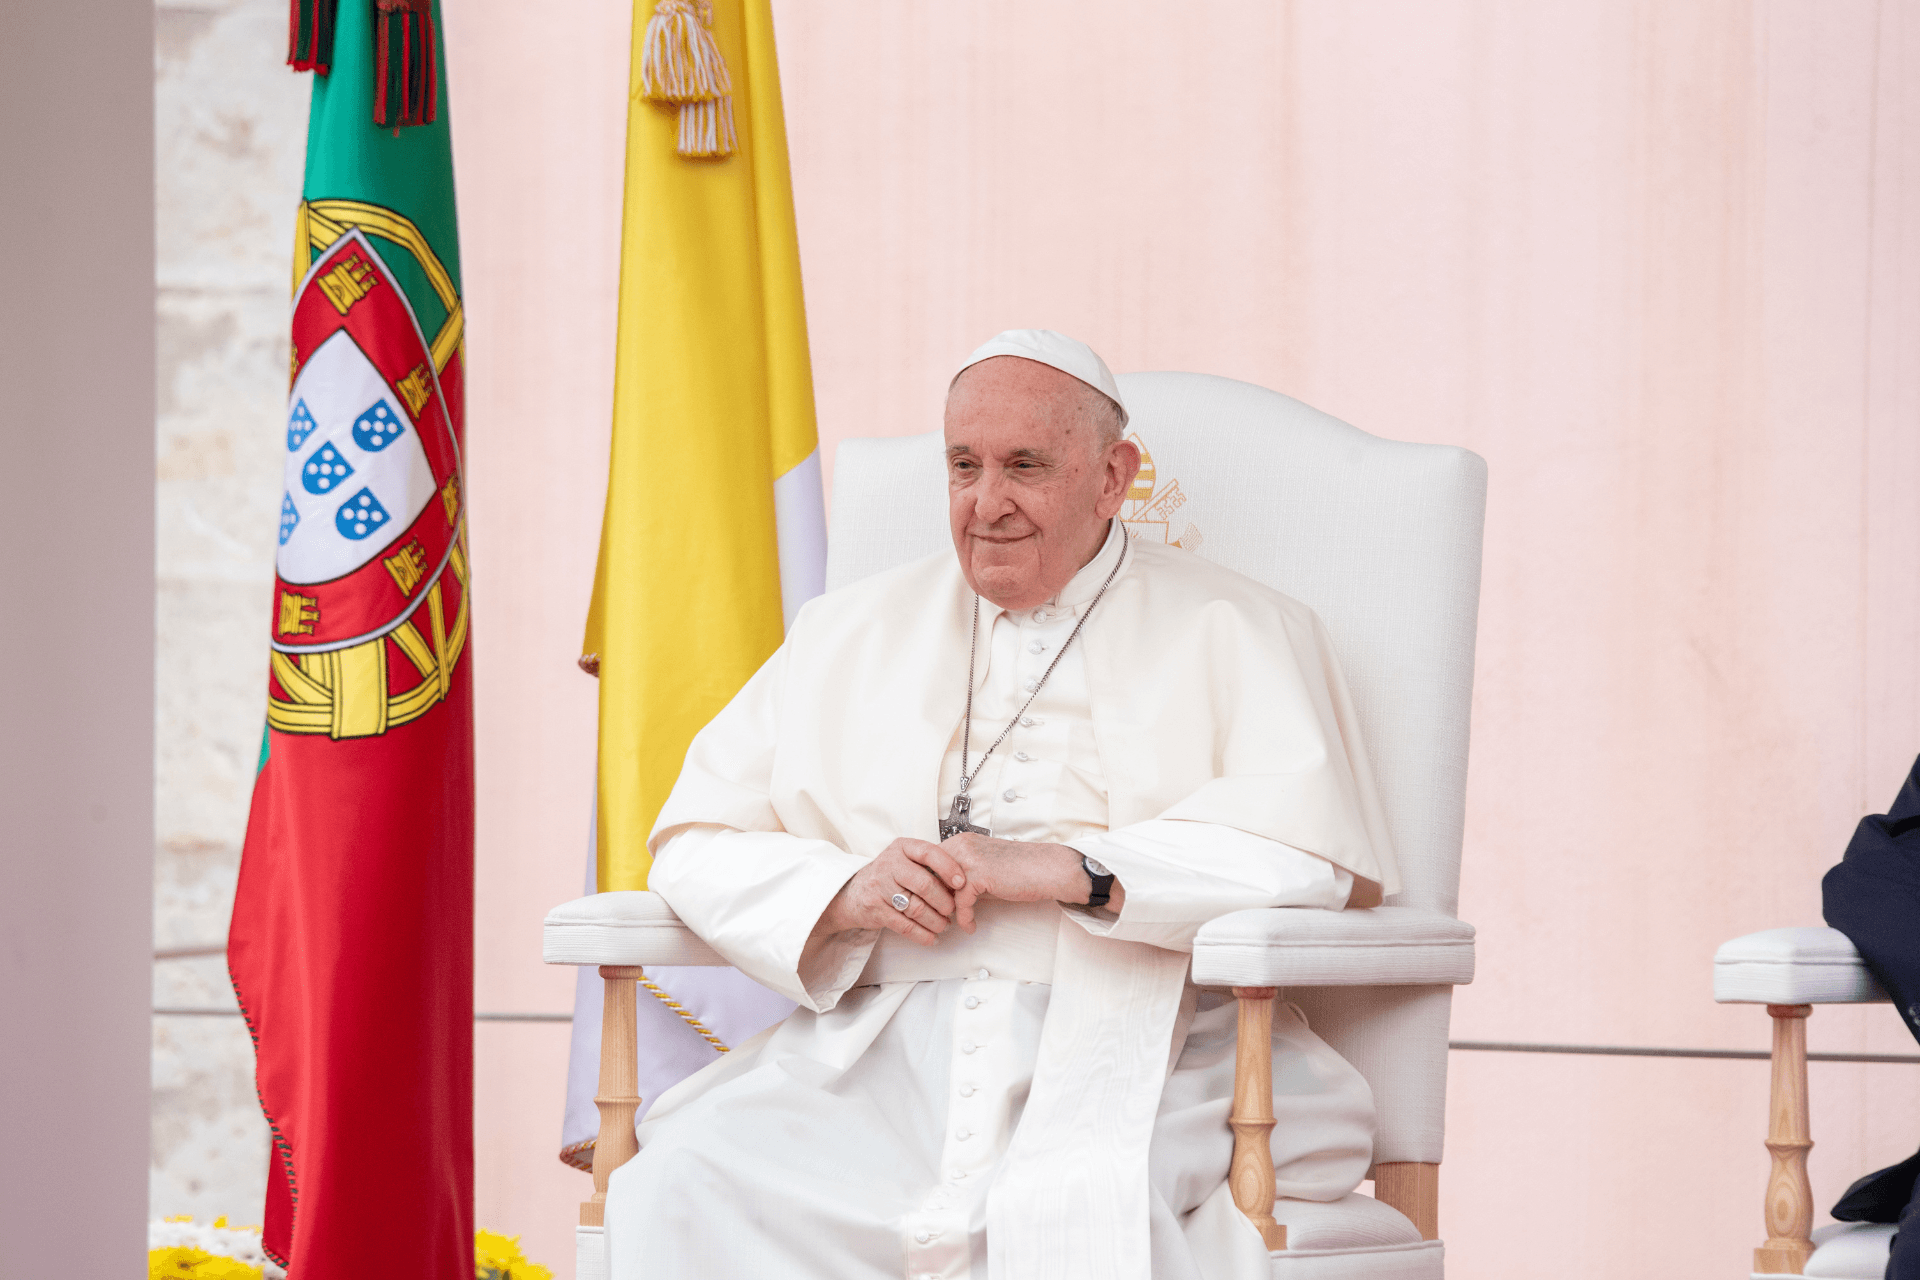 Imagen destacada del artículo: Diez frases impactantes del Papa Francisco en la JMJ